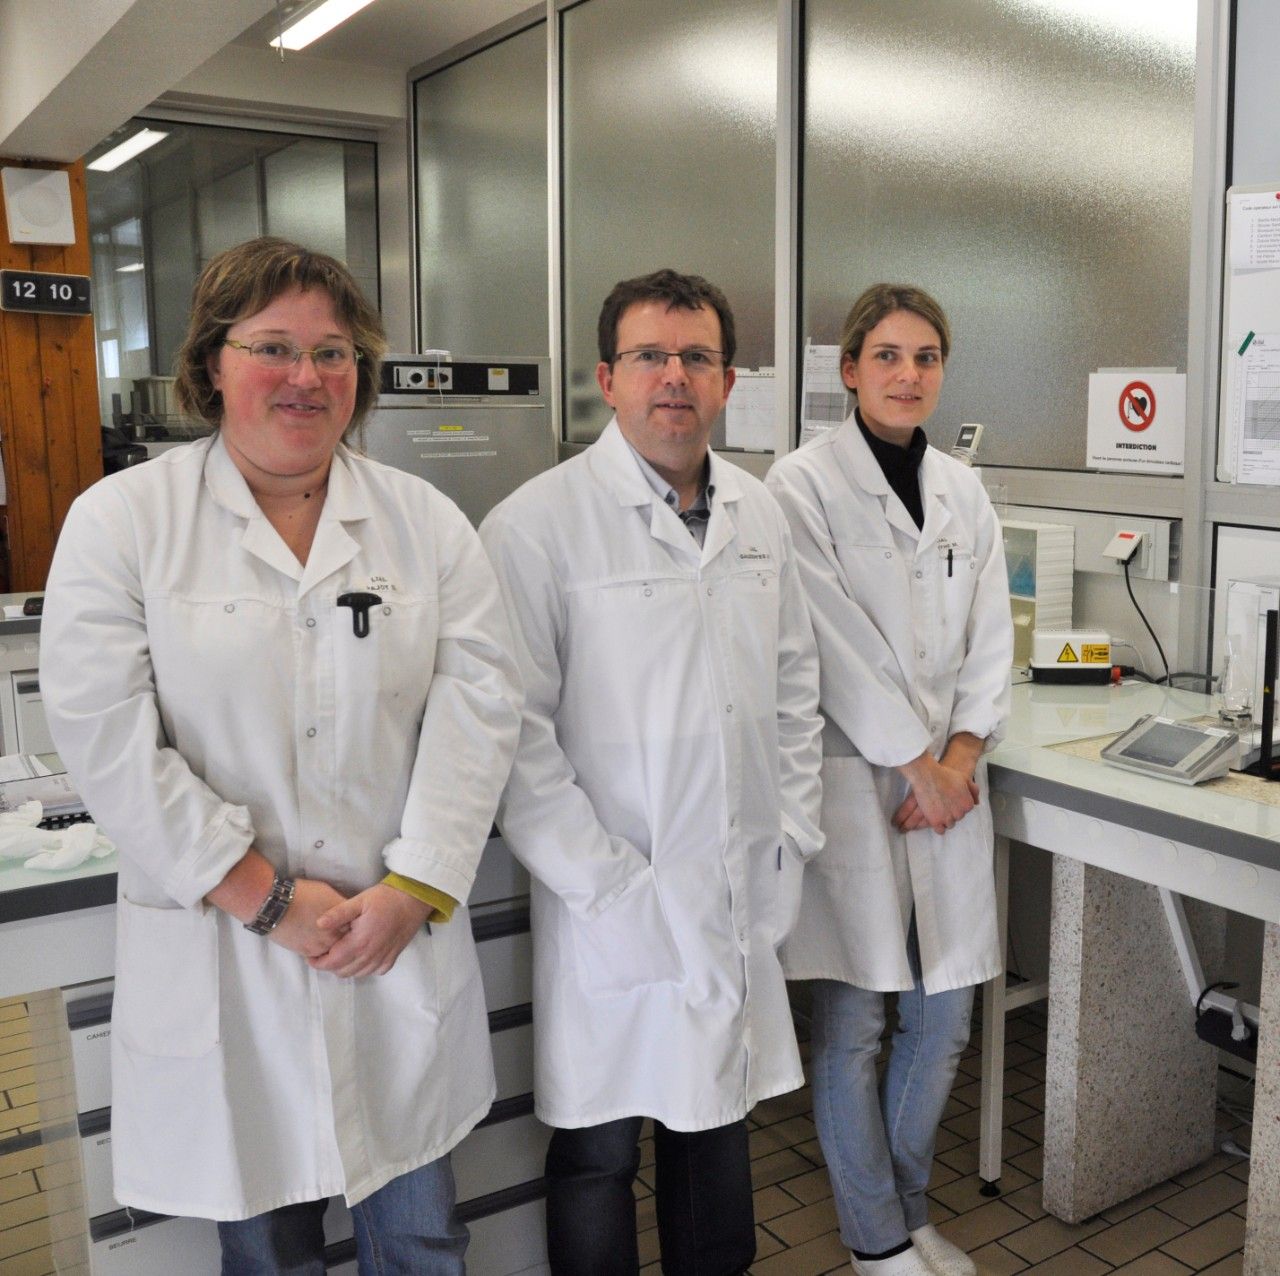 De gauche à droite : Sandrine Bioulac (Responsable technique, Service Chimie), Jean-Vincent Gauzentes (Directeur général) et Maryline Barthe (Technicienne de laboratoire).